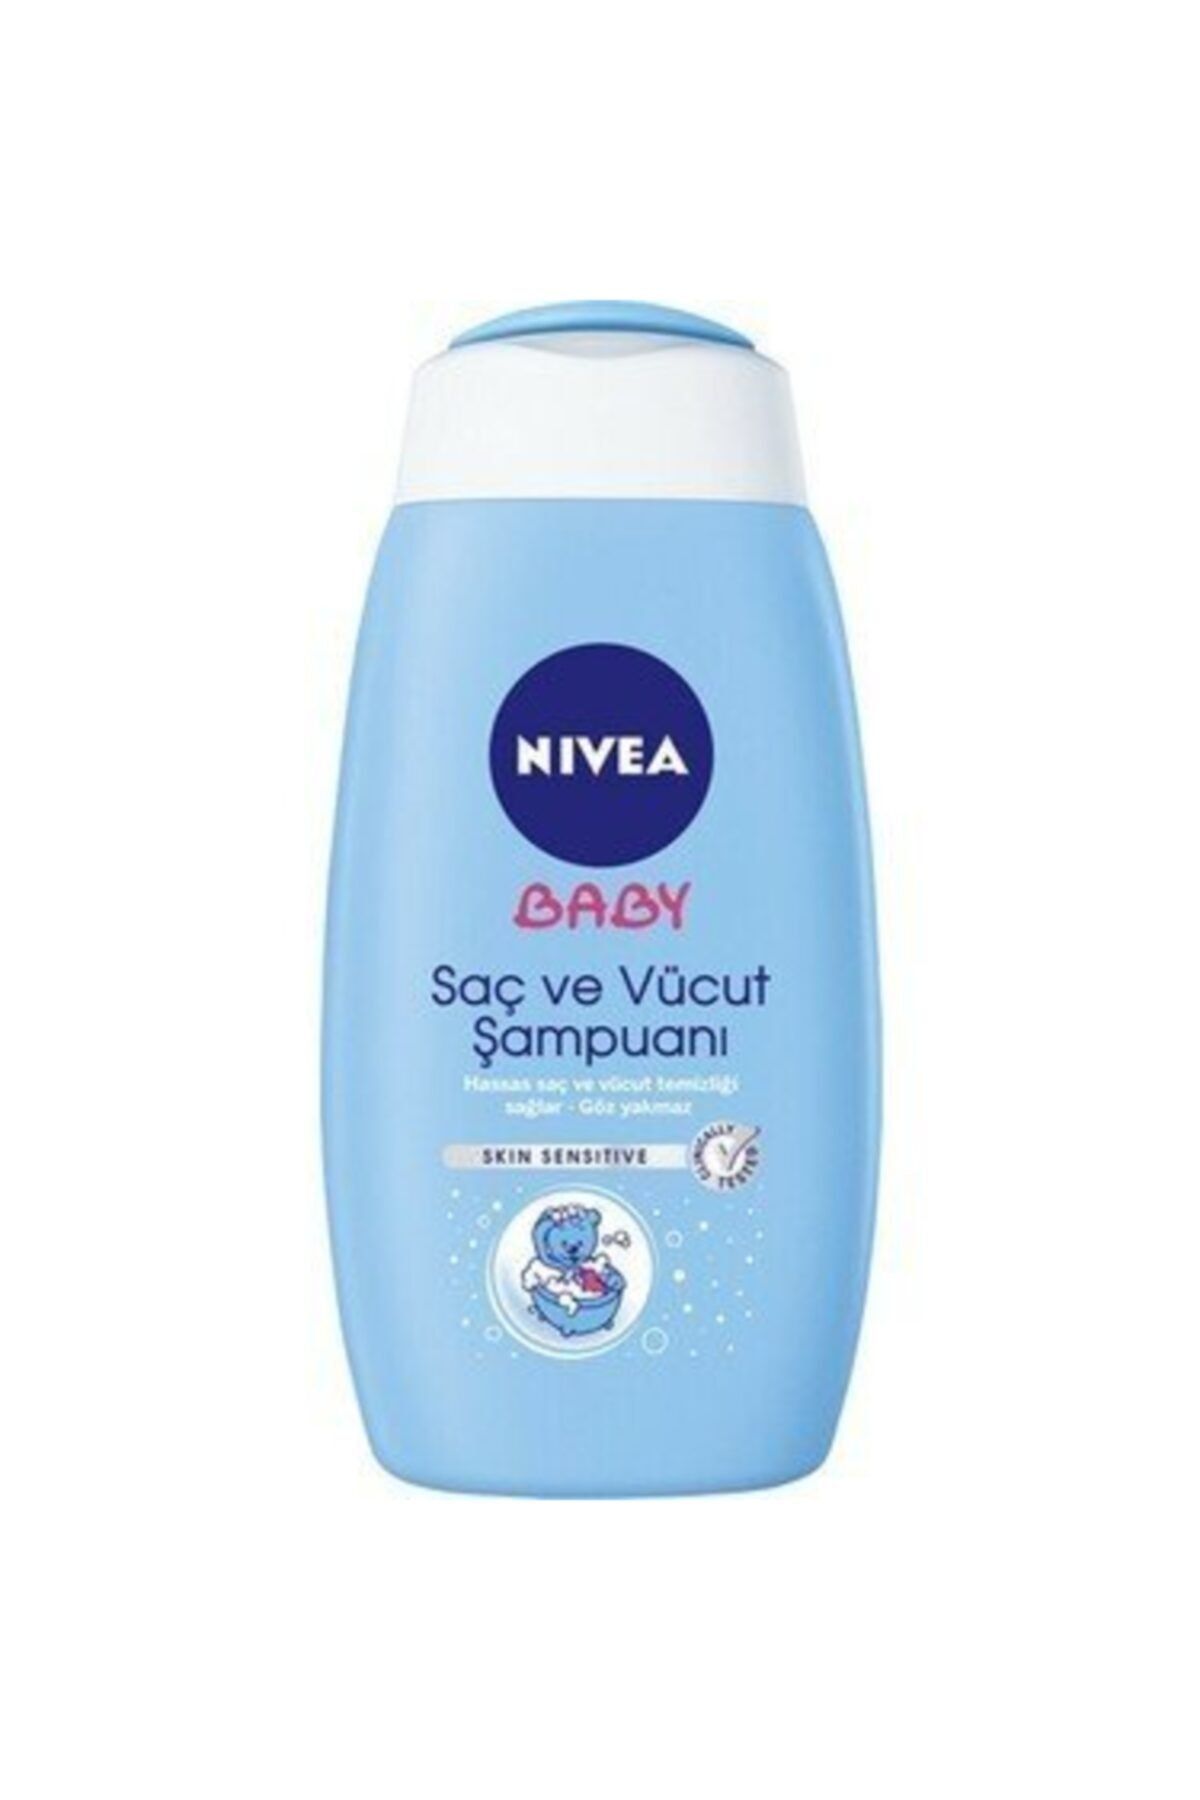 NIVEA Baby Saç Ve Vücut Şampuanı 500 ml